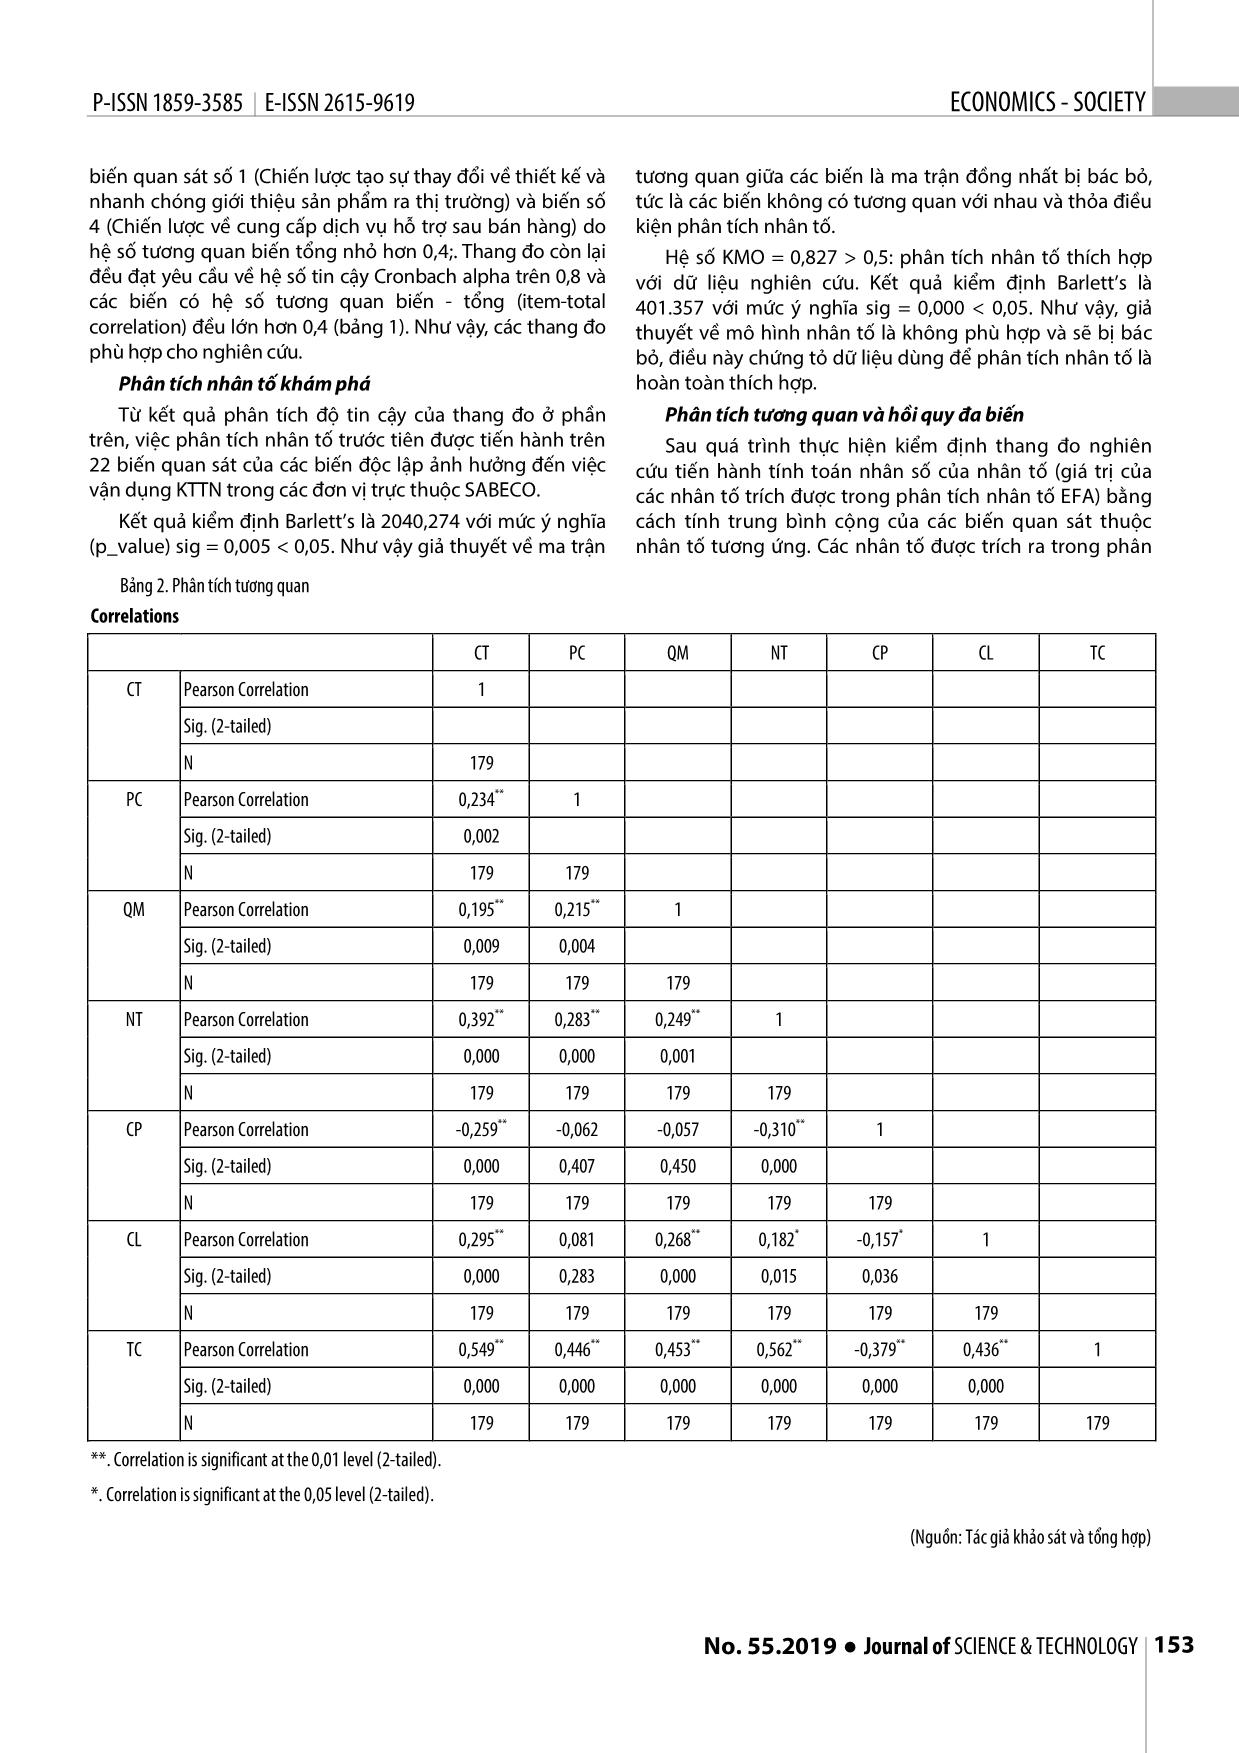 Nghiên cứu nhân tố ảnh hưởng đến việc tổ chức kế toán trách nhiệm trong doanh nghiệp: Dữ liệu tại các đơn vị trực thuộc Tổng công ty bia, rượu, nước giải khát Sài Gòn (Sabeco) trang 5